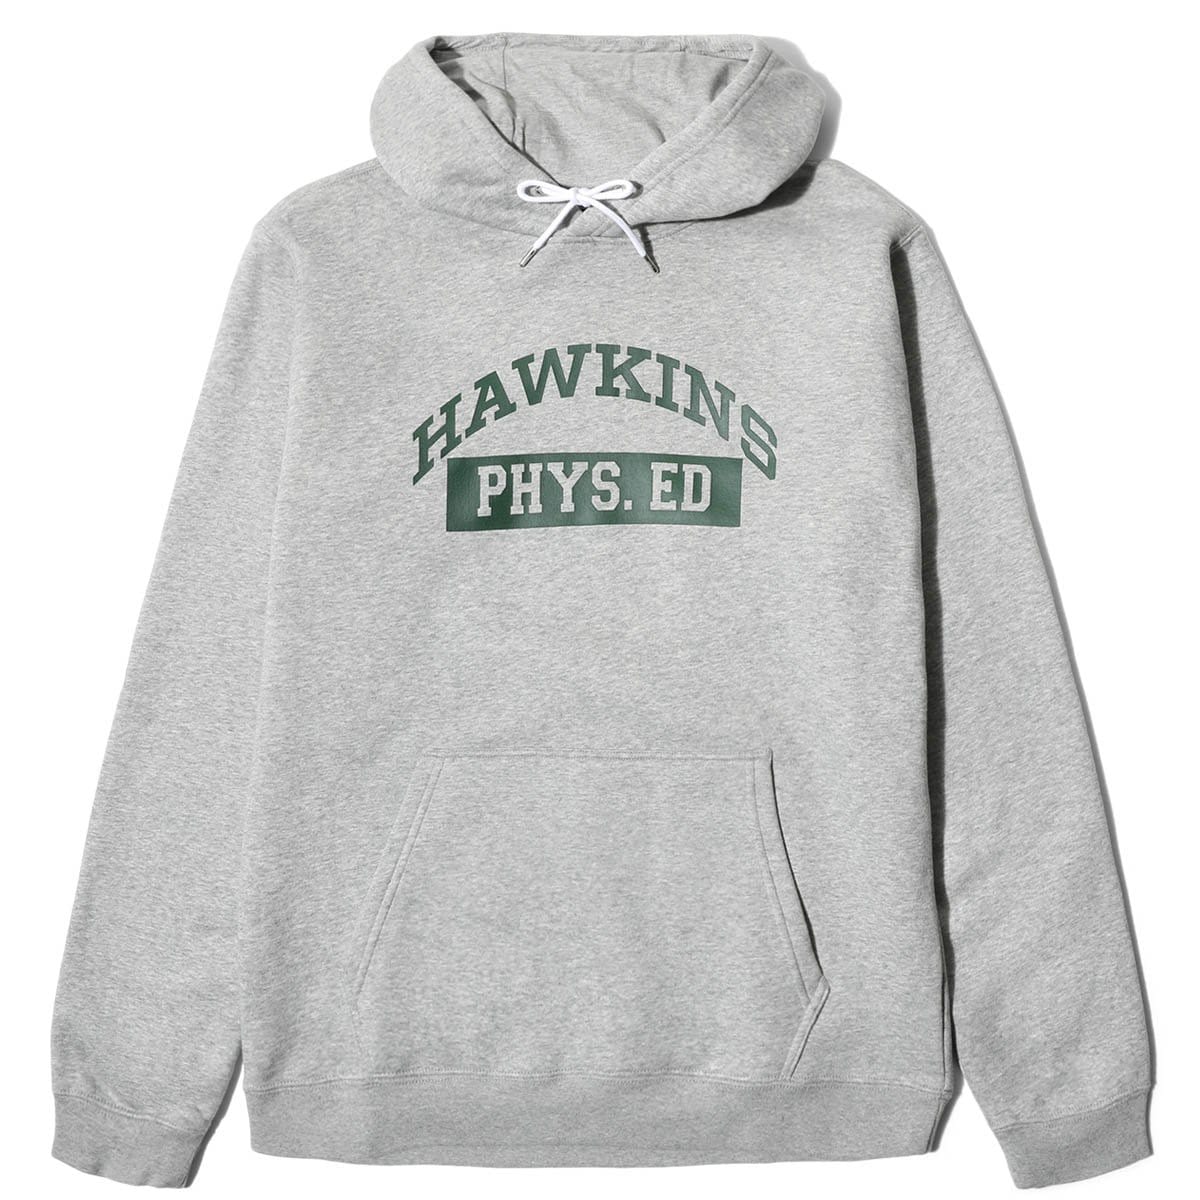 hawkins nike hoodie